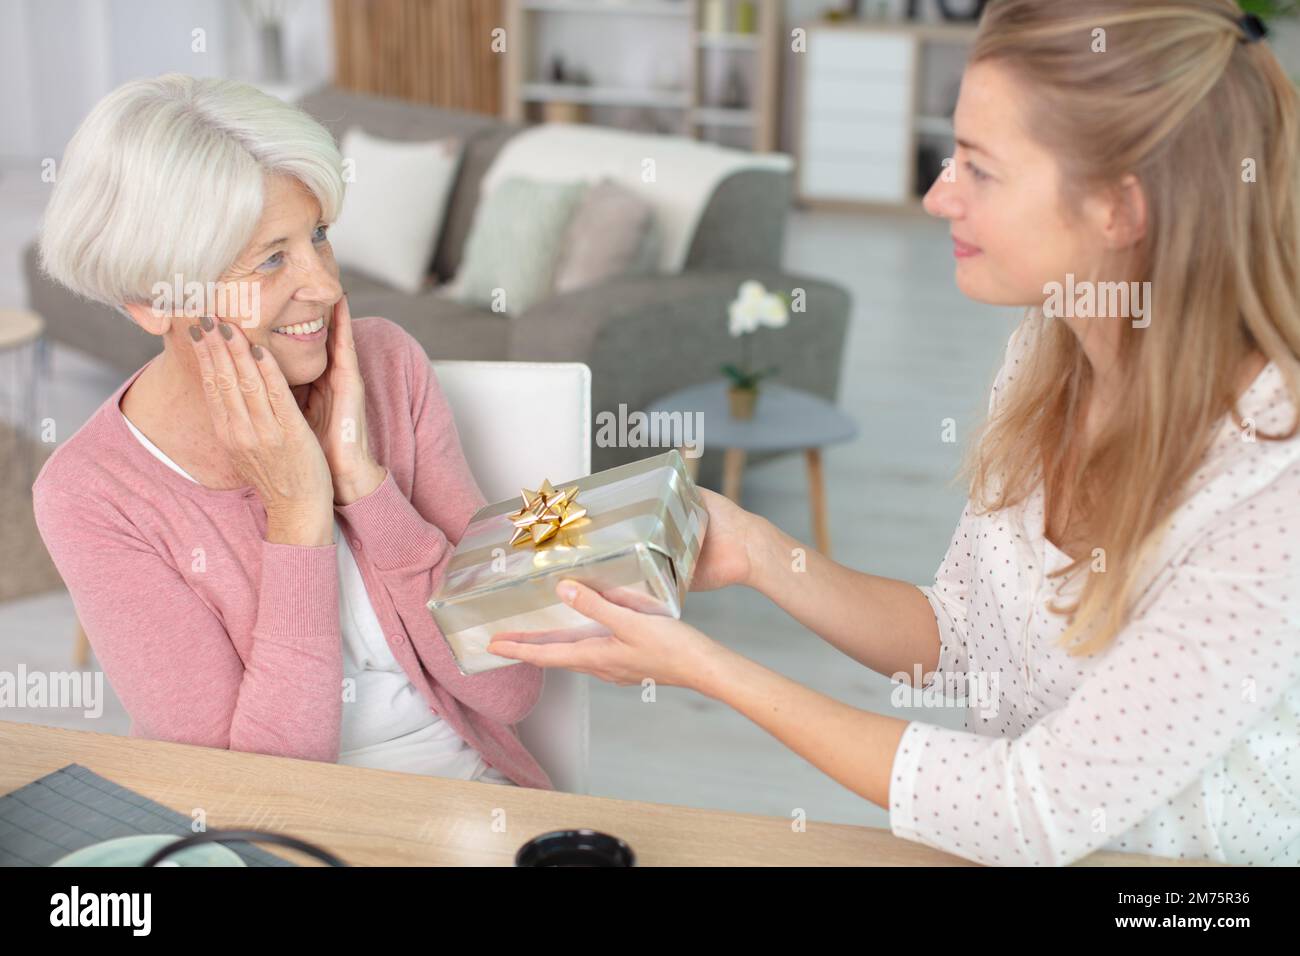 jeune femme offrant un cadeau à sa grand-mère ravie Banque D'Images